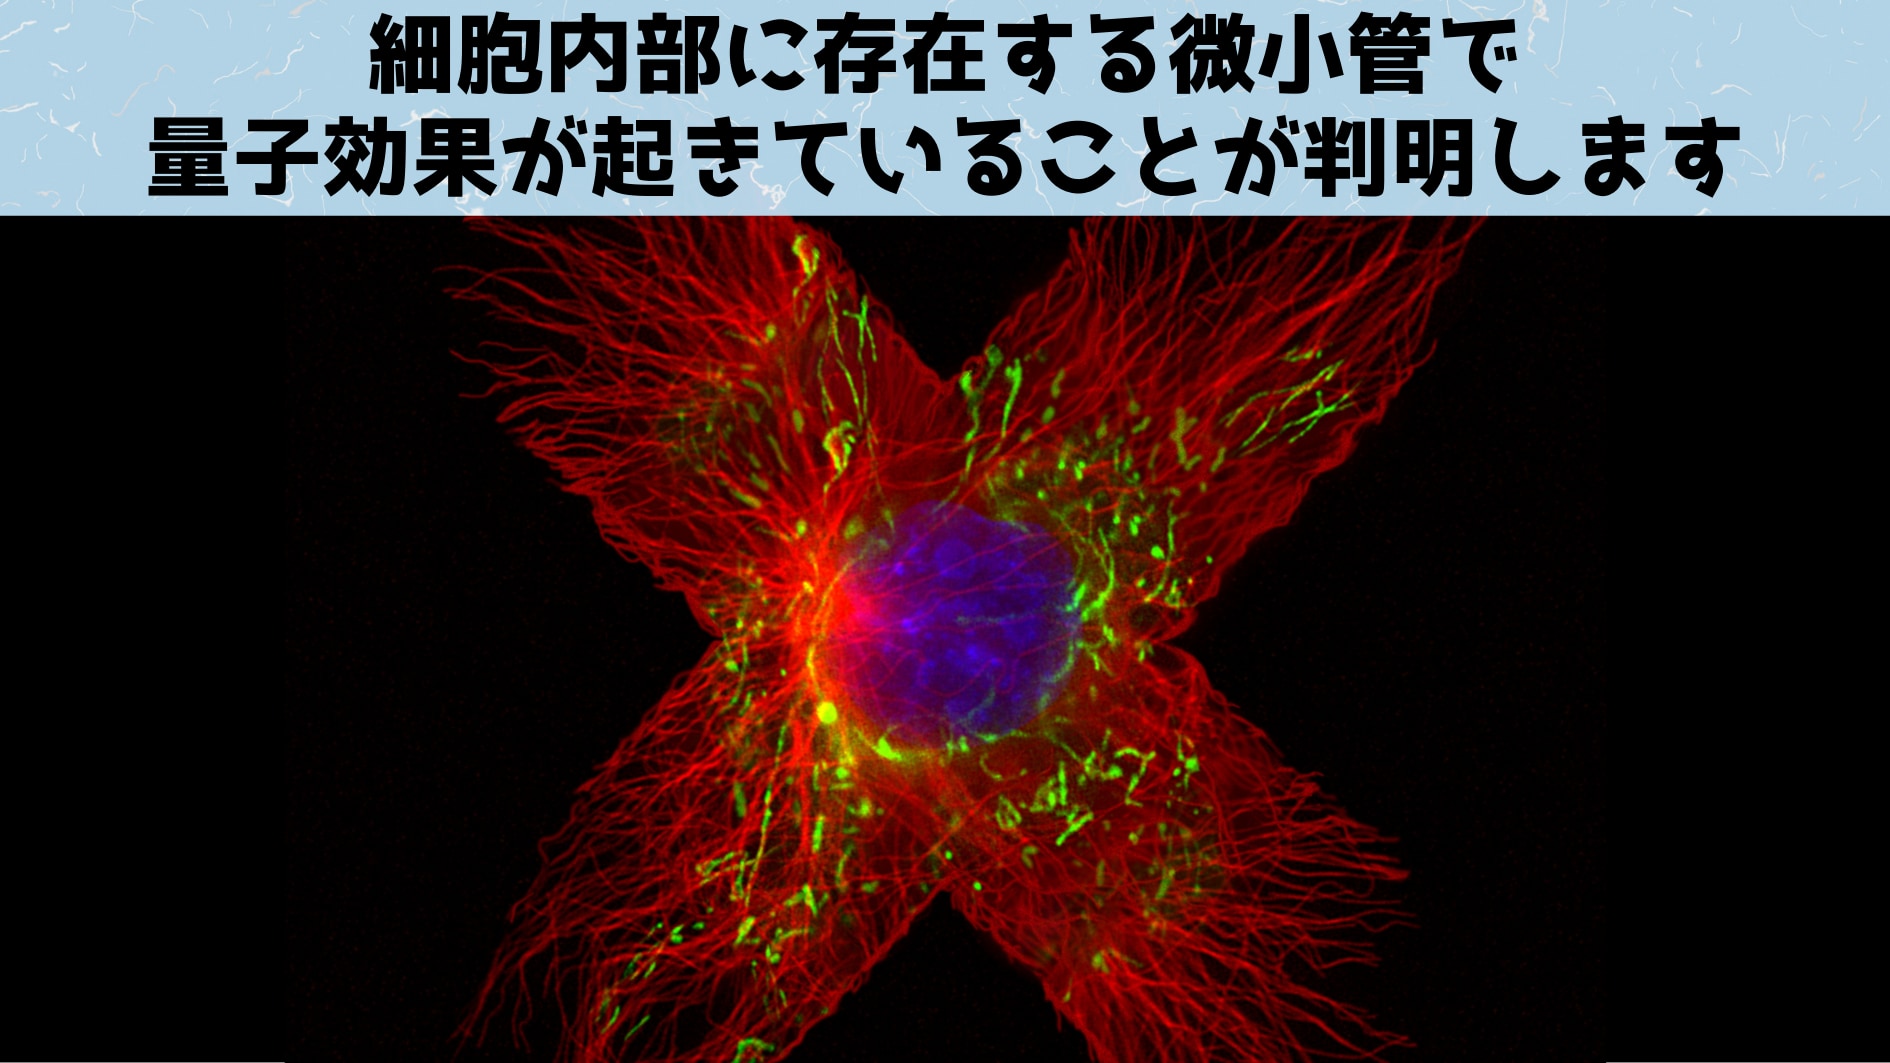 微小管は細胞の各地に張り巡らされているほか、細胞分裂時には染色体を引っ張る役割もする